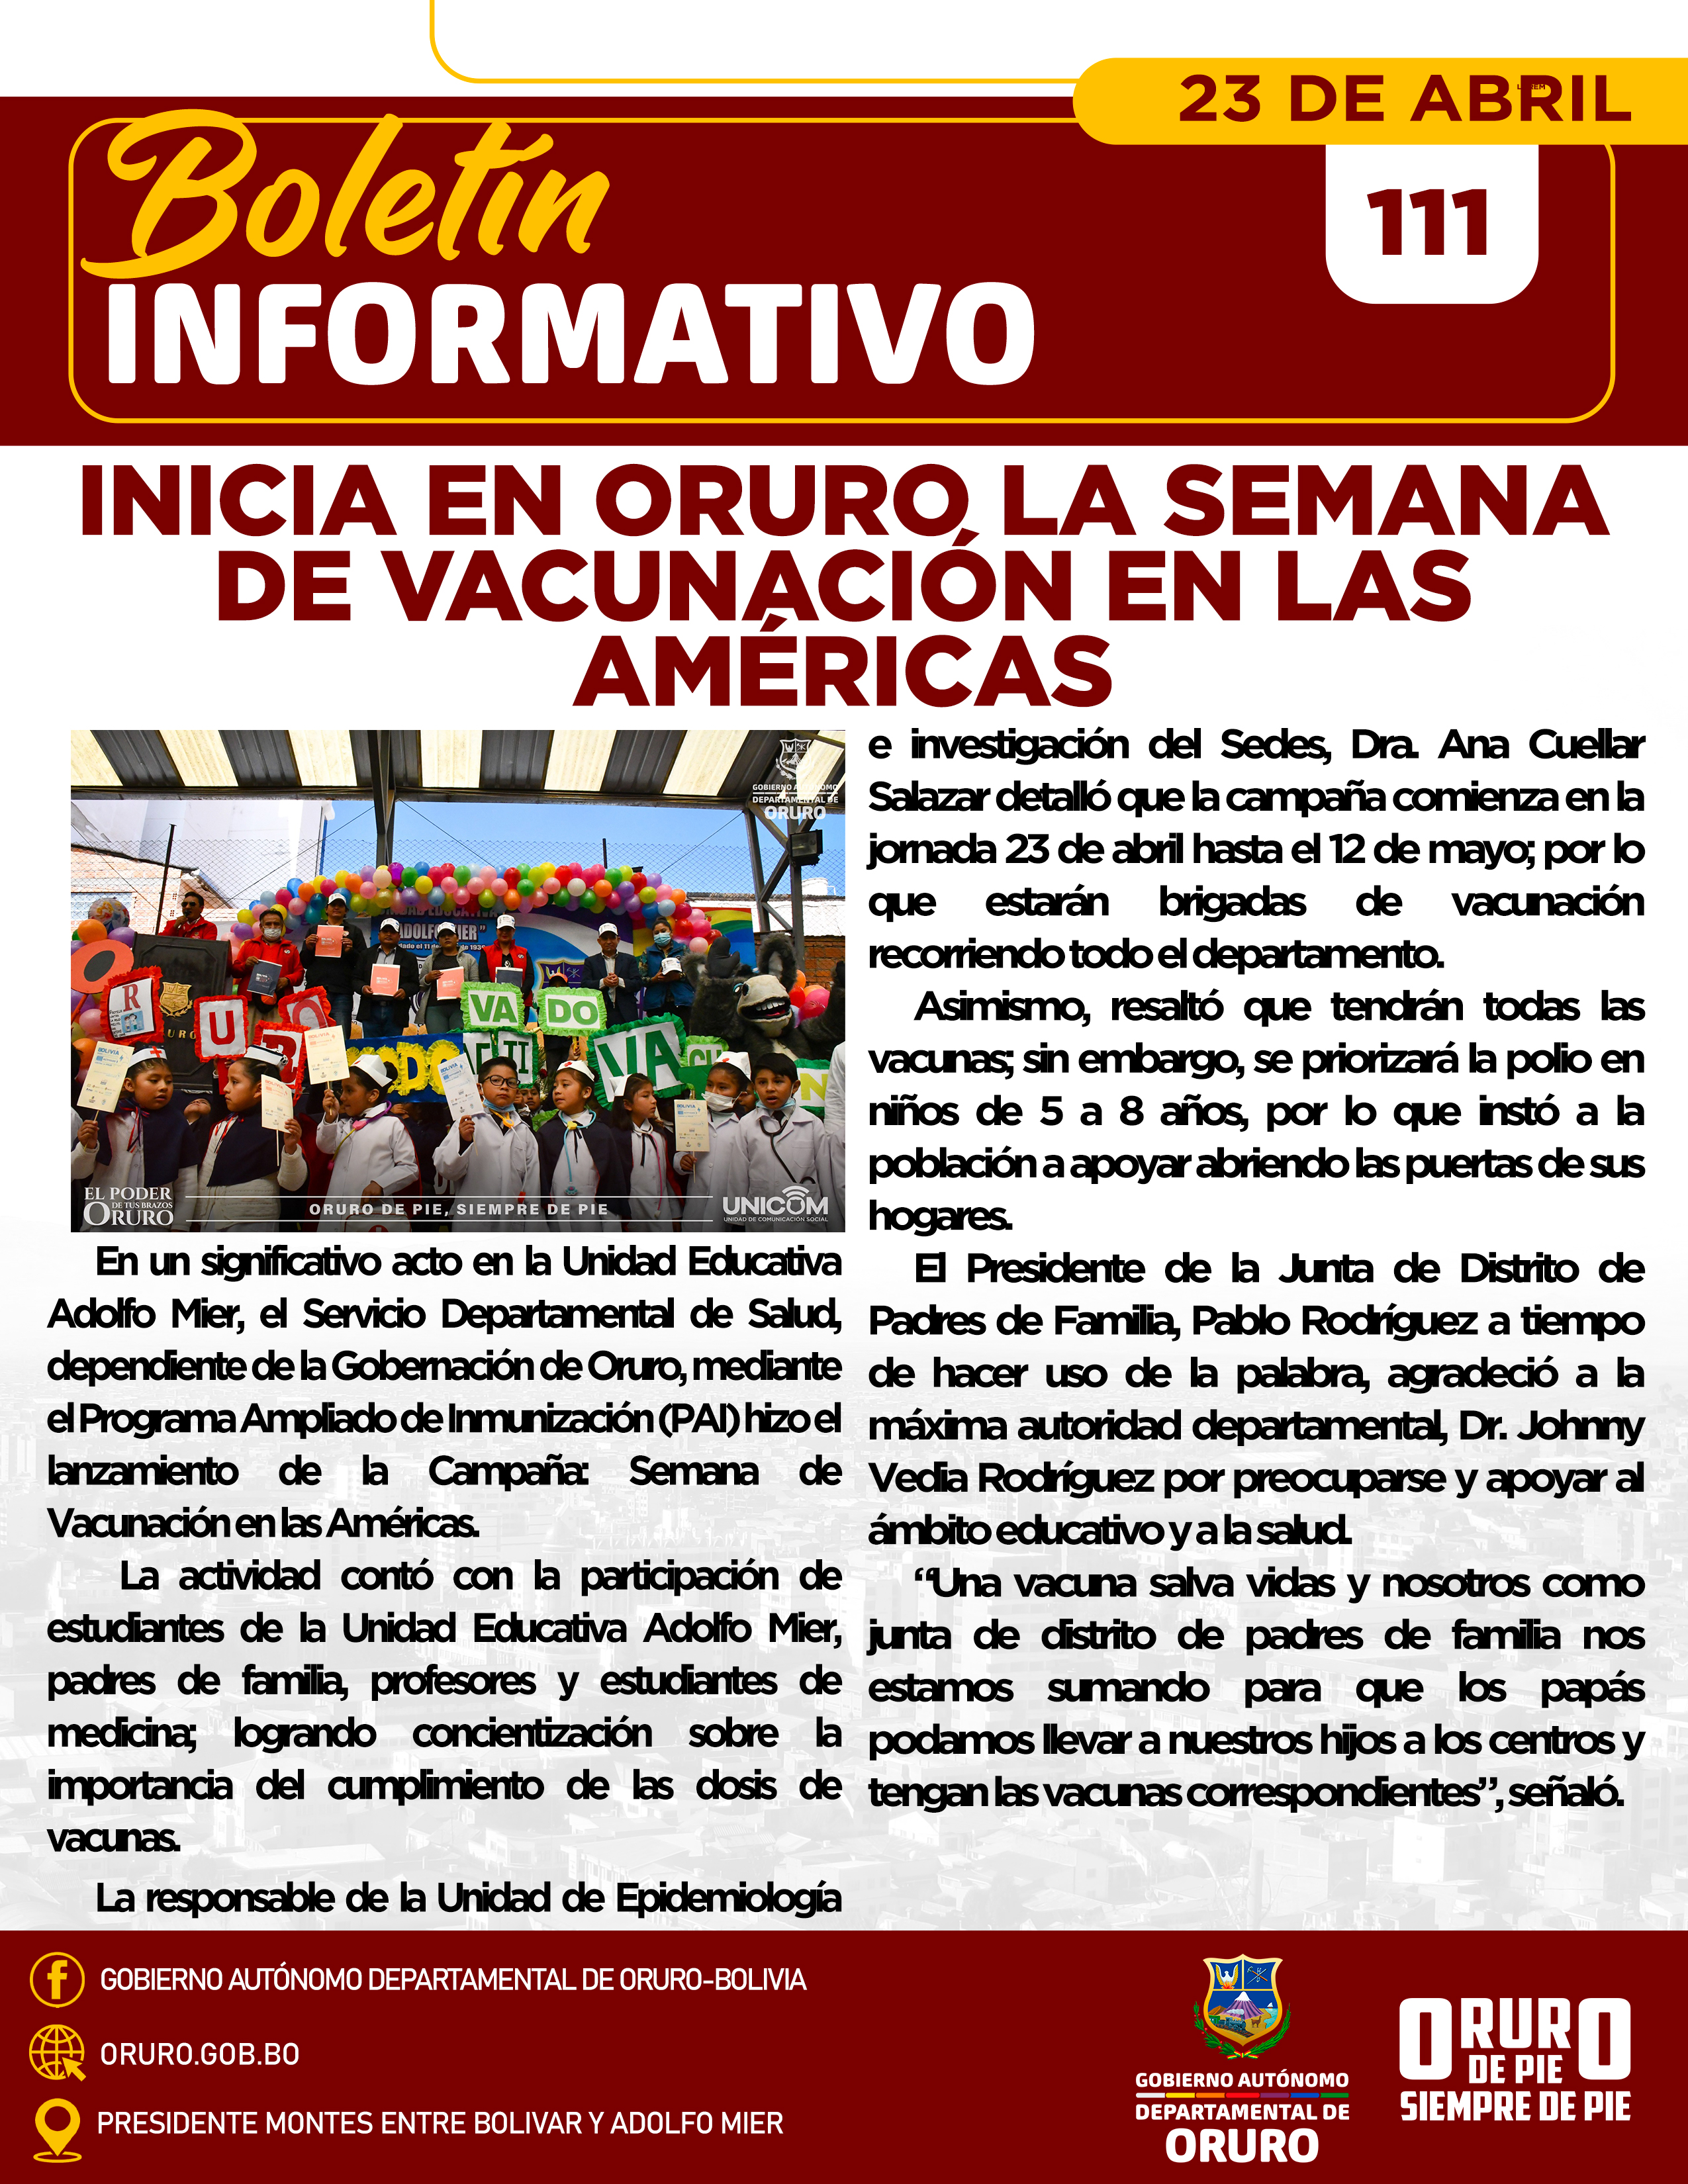 Inicia en Oruro la Semana de Vacunación en las Américas